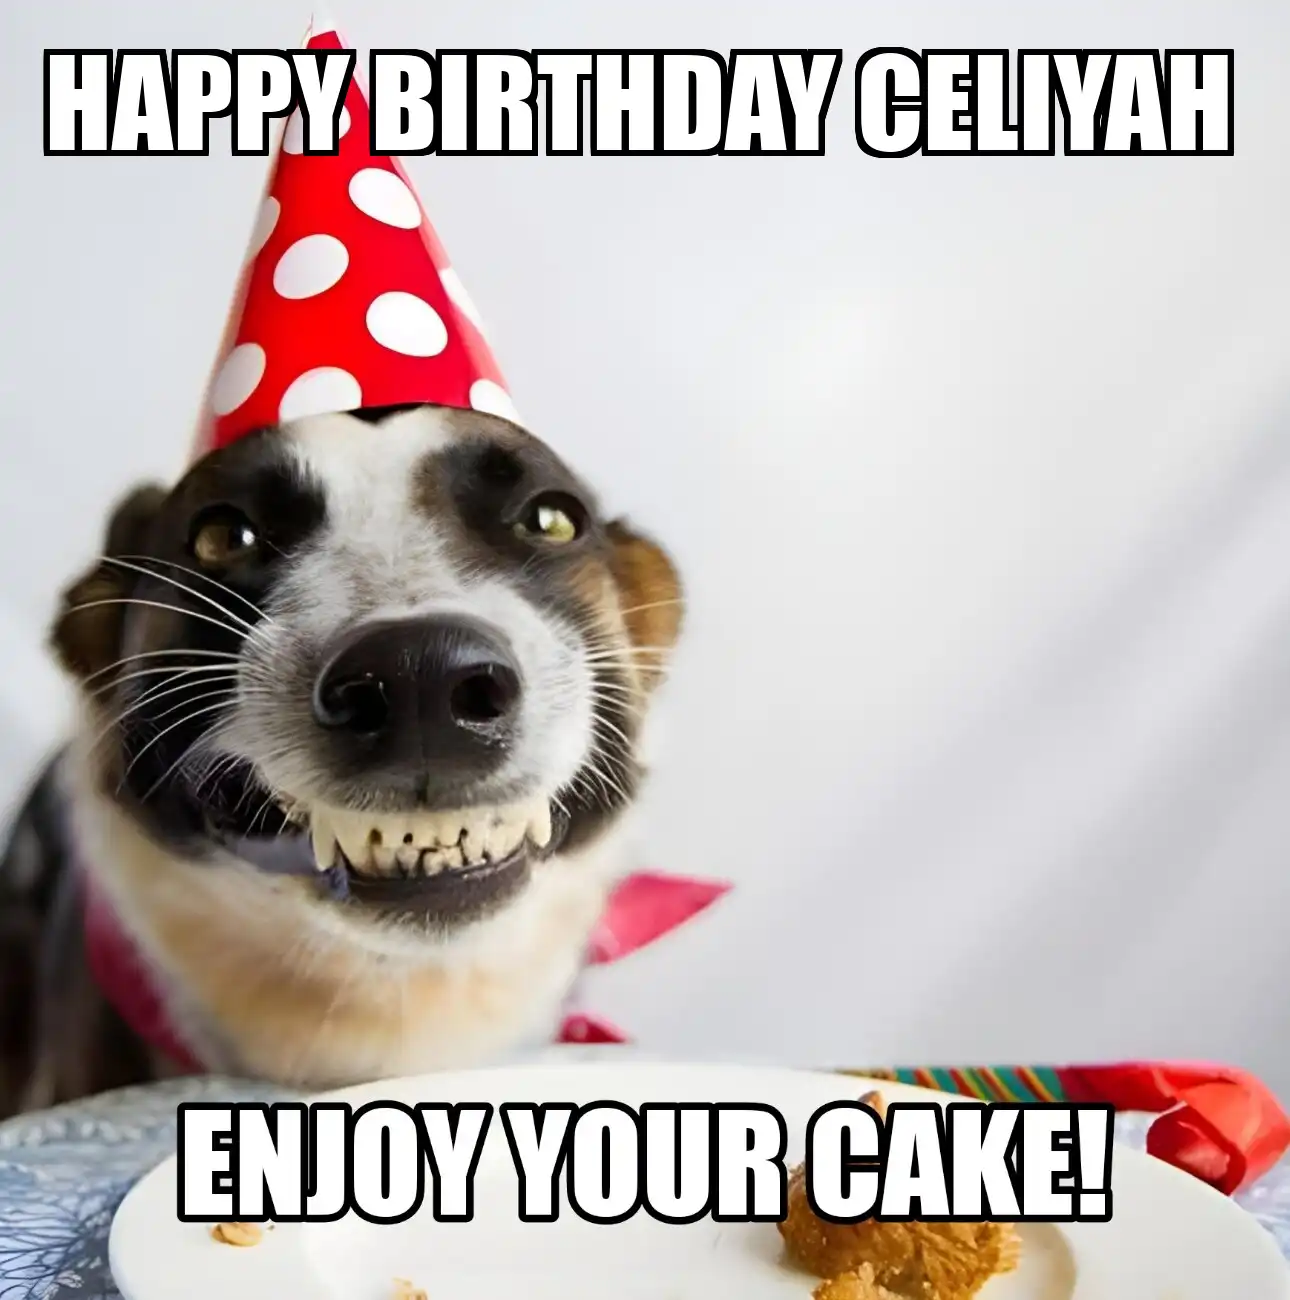 Happy Birthday Celiyah Enjoy Your Cake Dog Meme